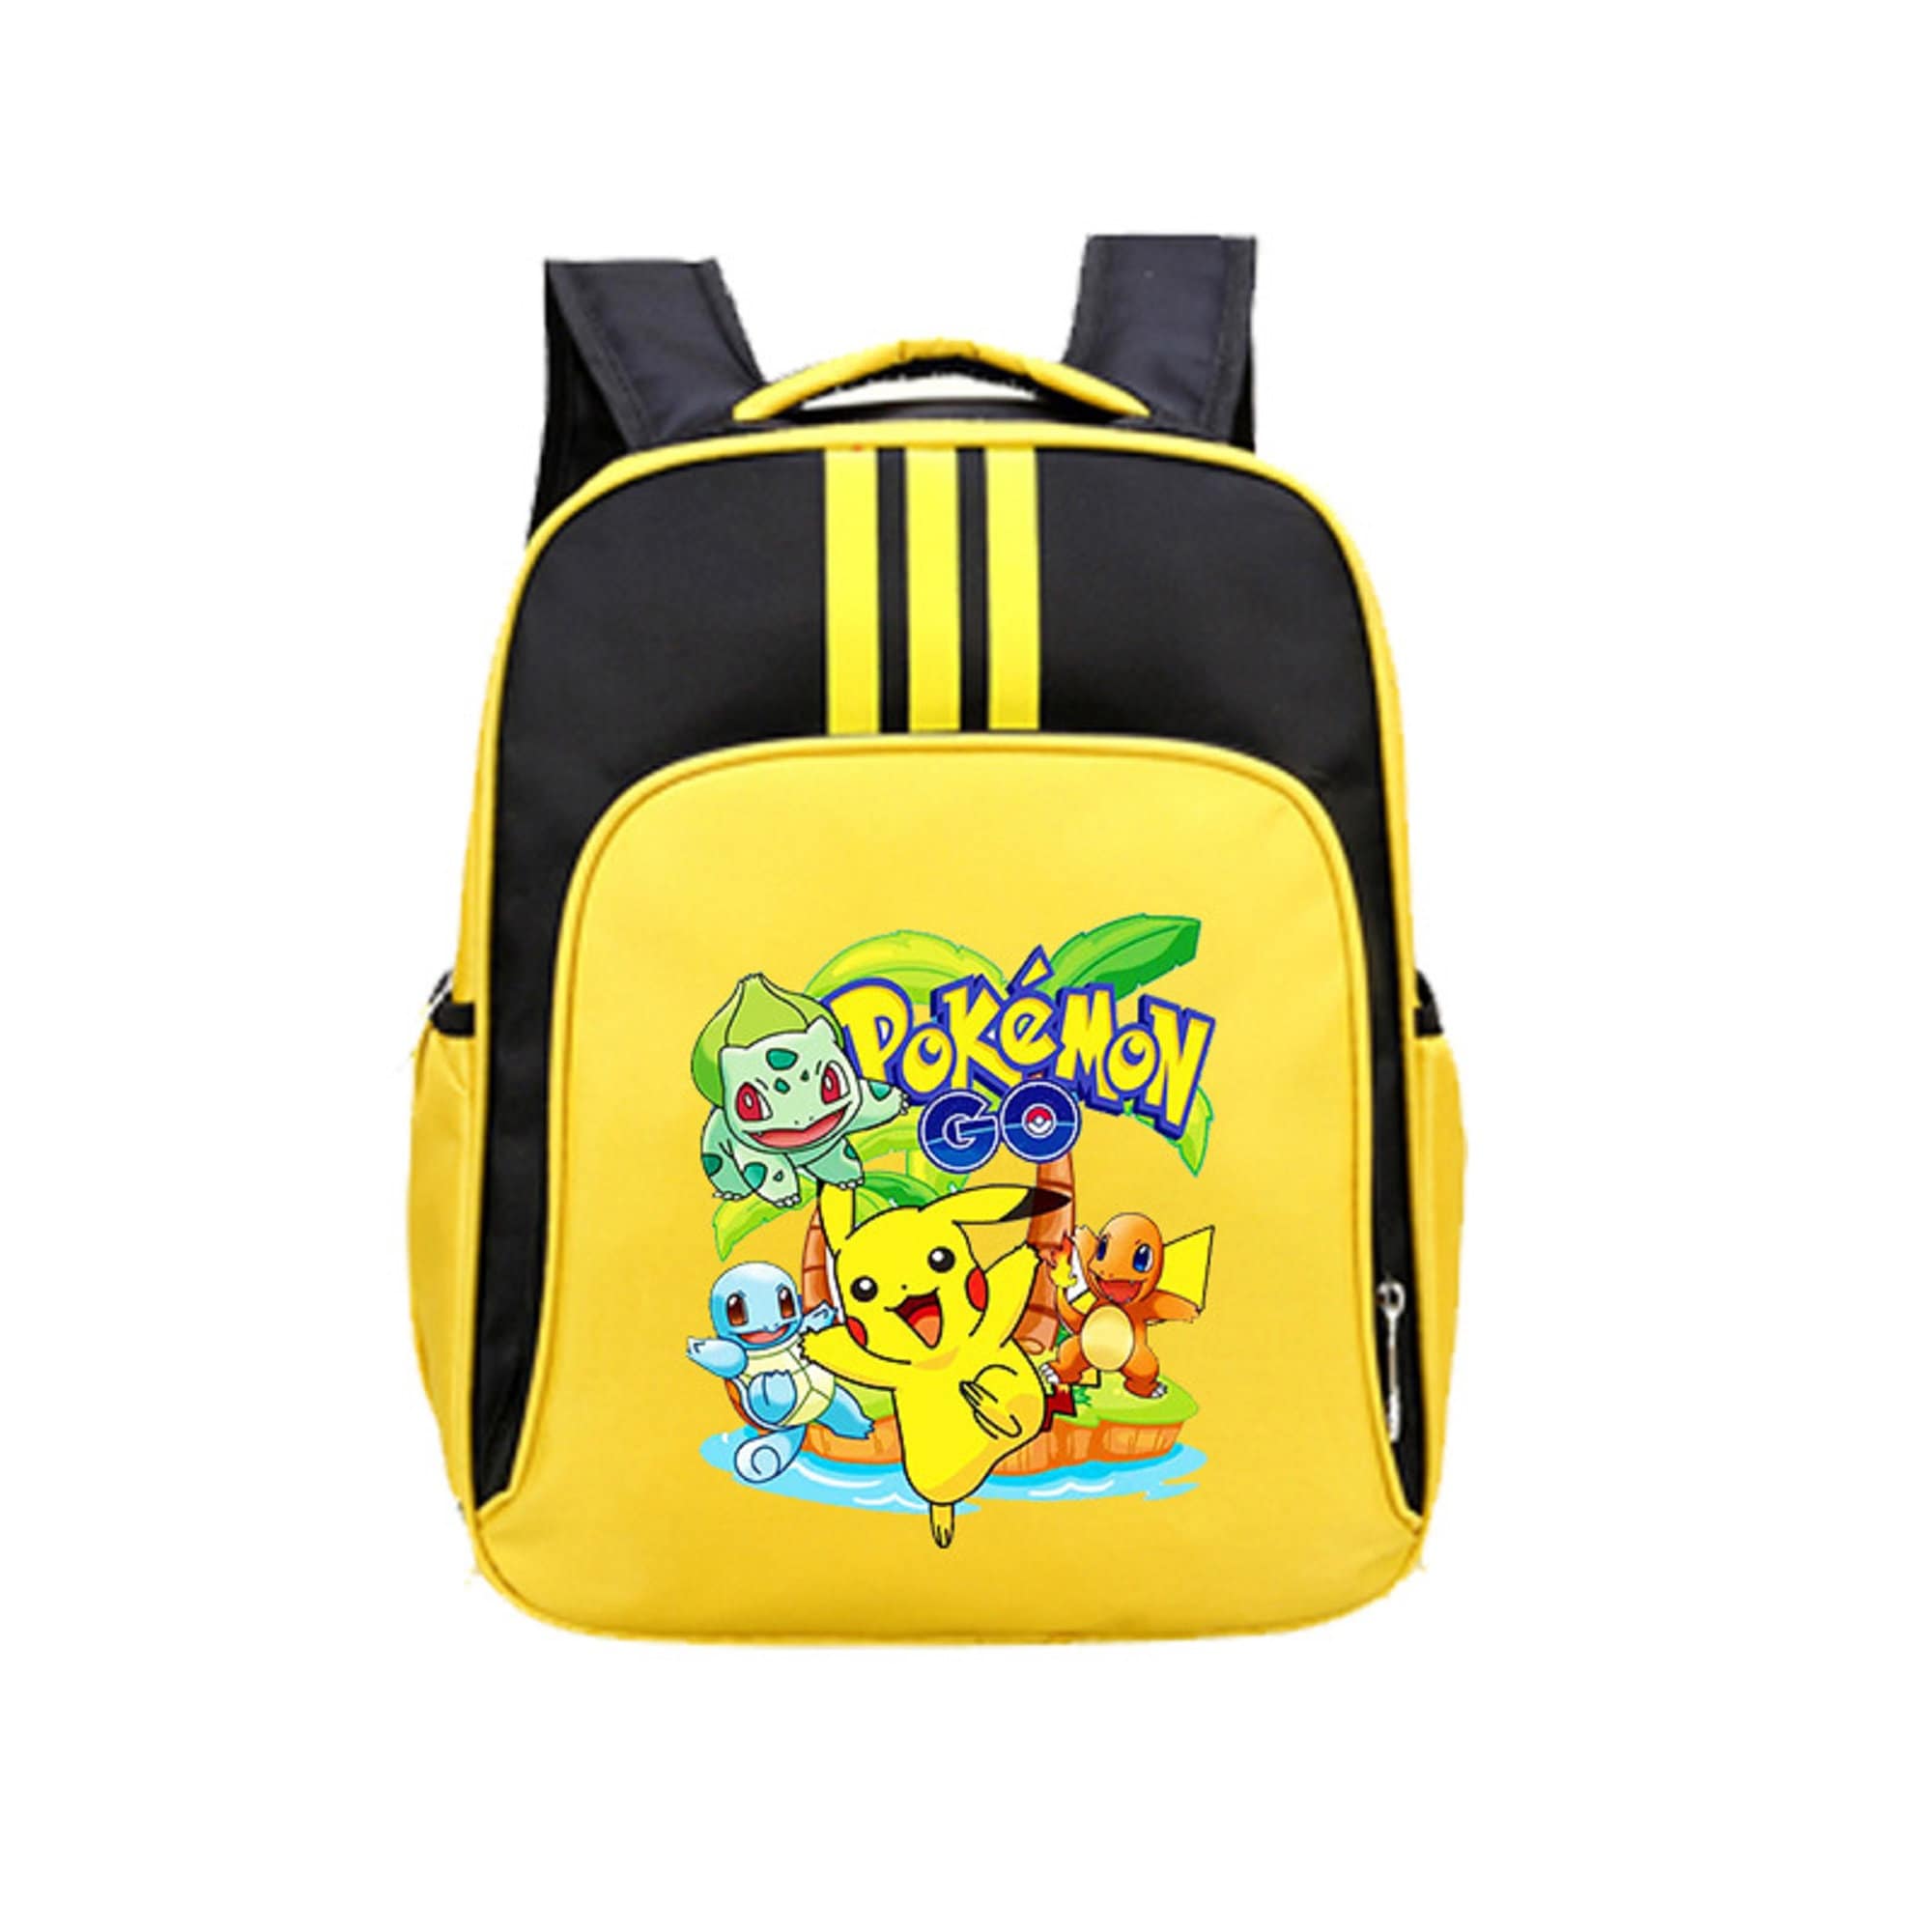 Comprar Mochila Pokemon Pikachu 025 ¡Precio Oferta!